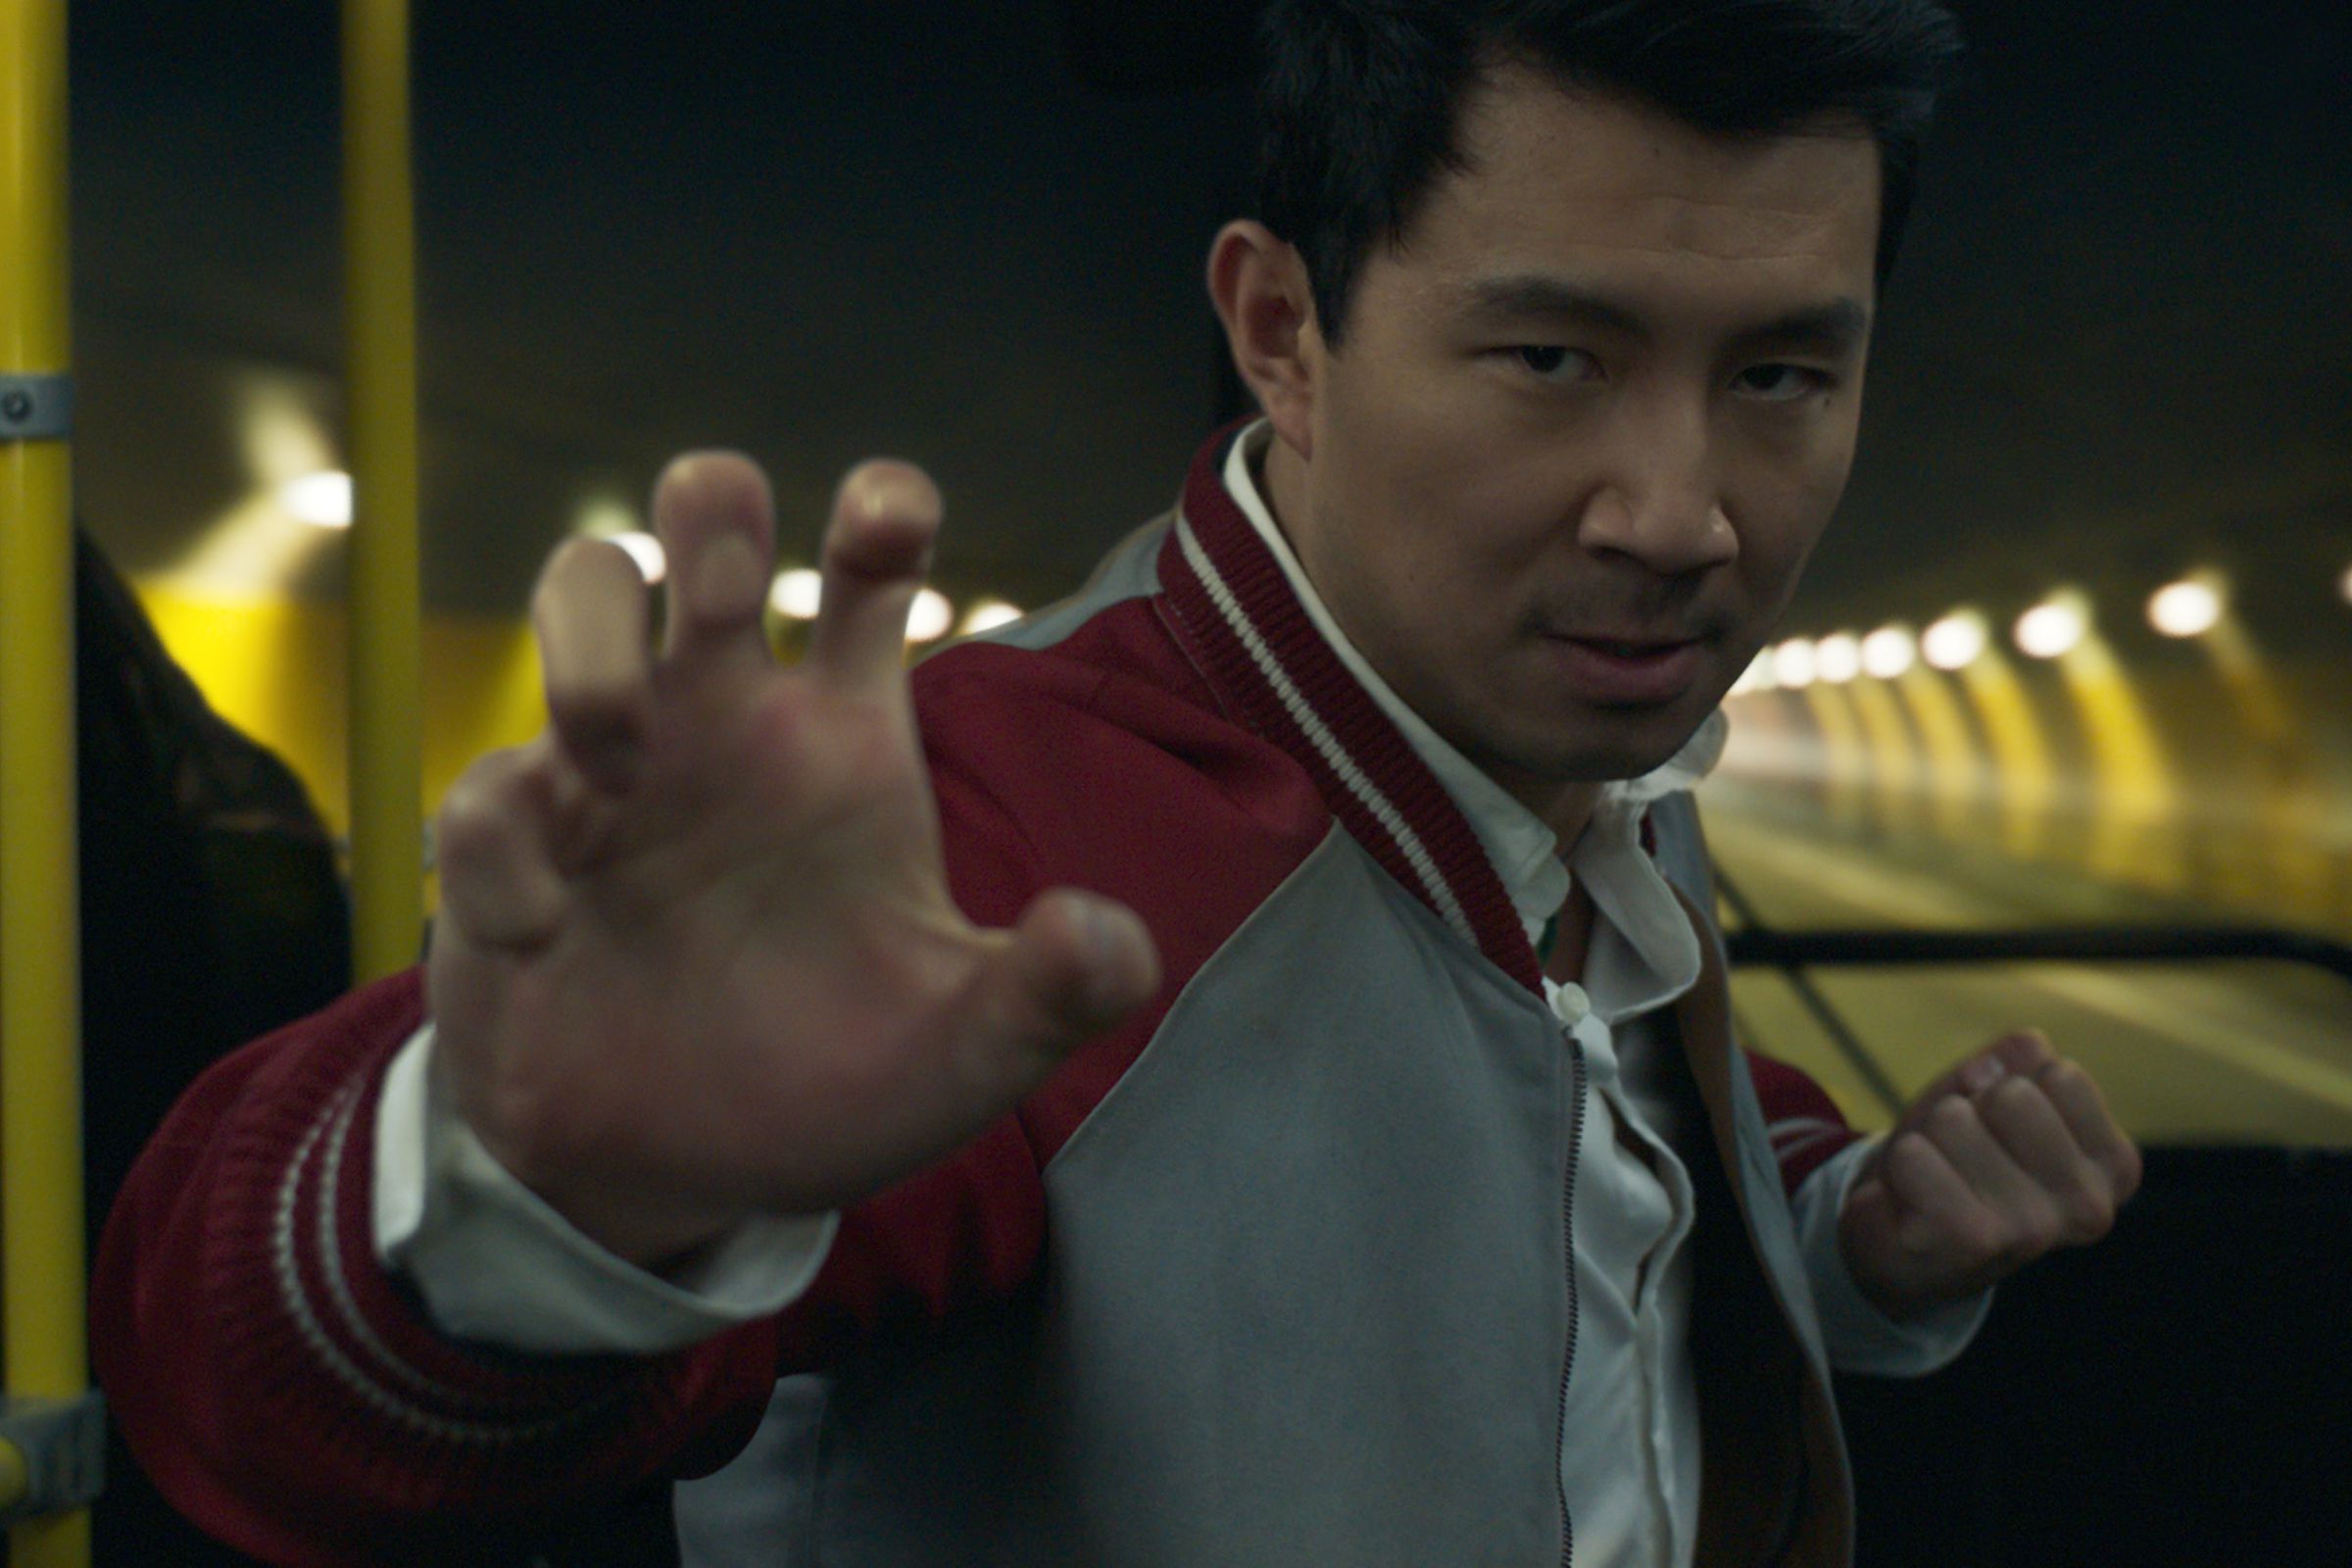 Actor Simu Liu in a fighting pose.